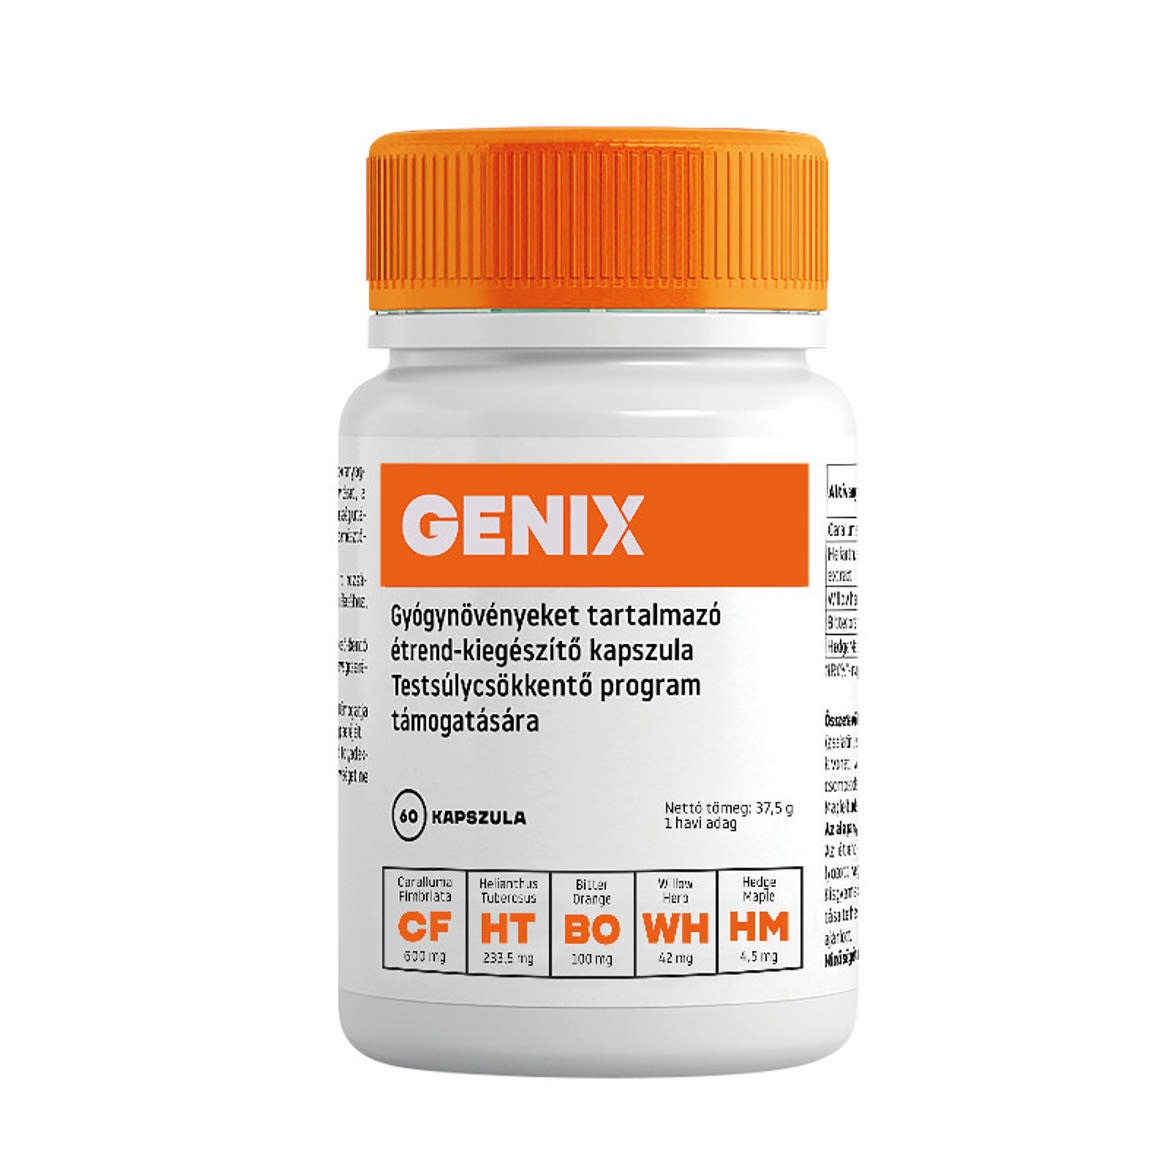 Genix étrend-kiegészítő kapszula testsúlycsökkentő